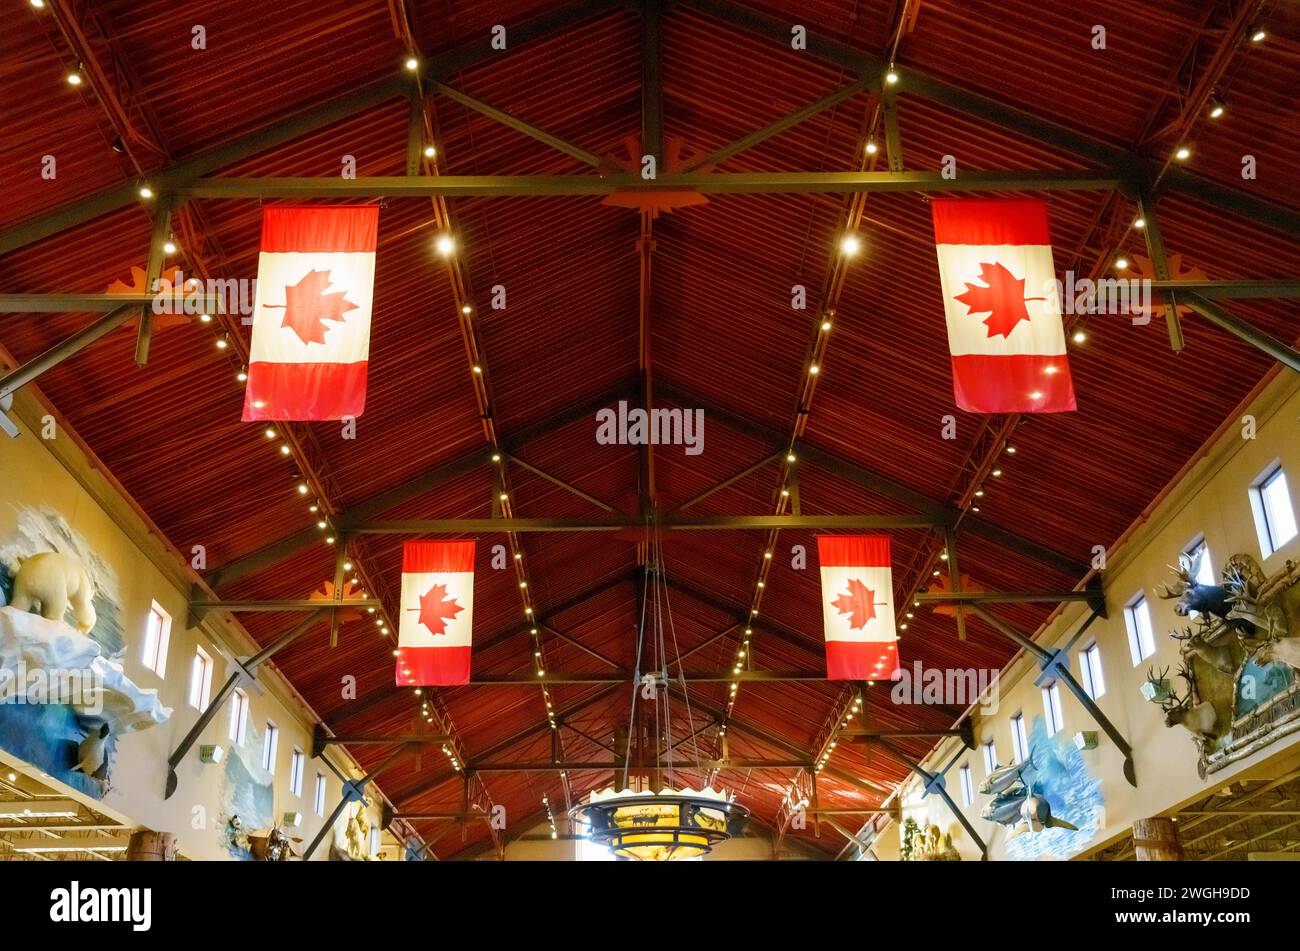 Simmetria delle bandiere canadesi nel soffitto del Bas Pro Shop. Il punto vendita al dettaglio è un'attrazione nel centro commerciale Vaughan Mills. Foto Stock